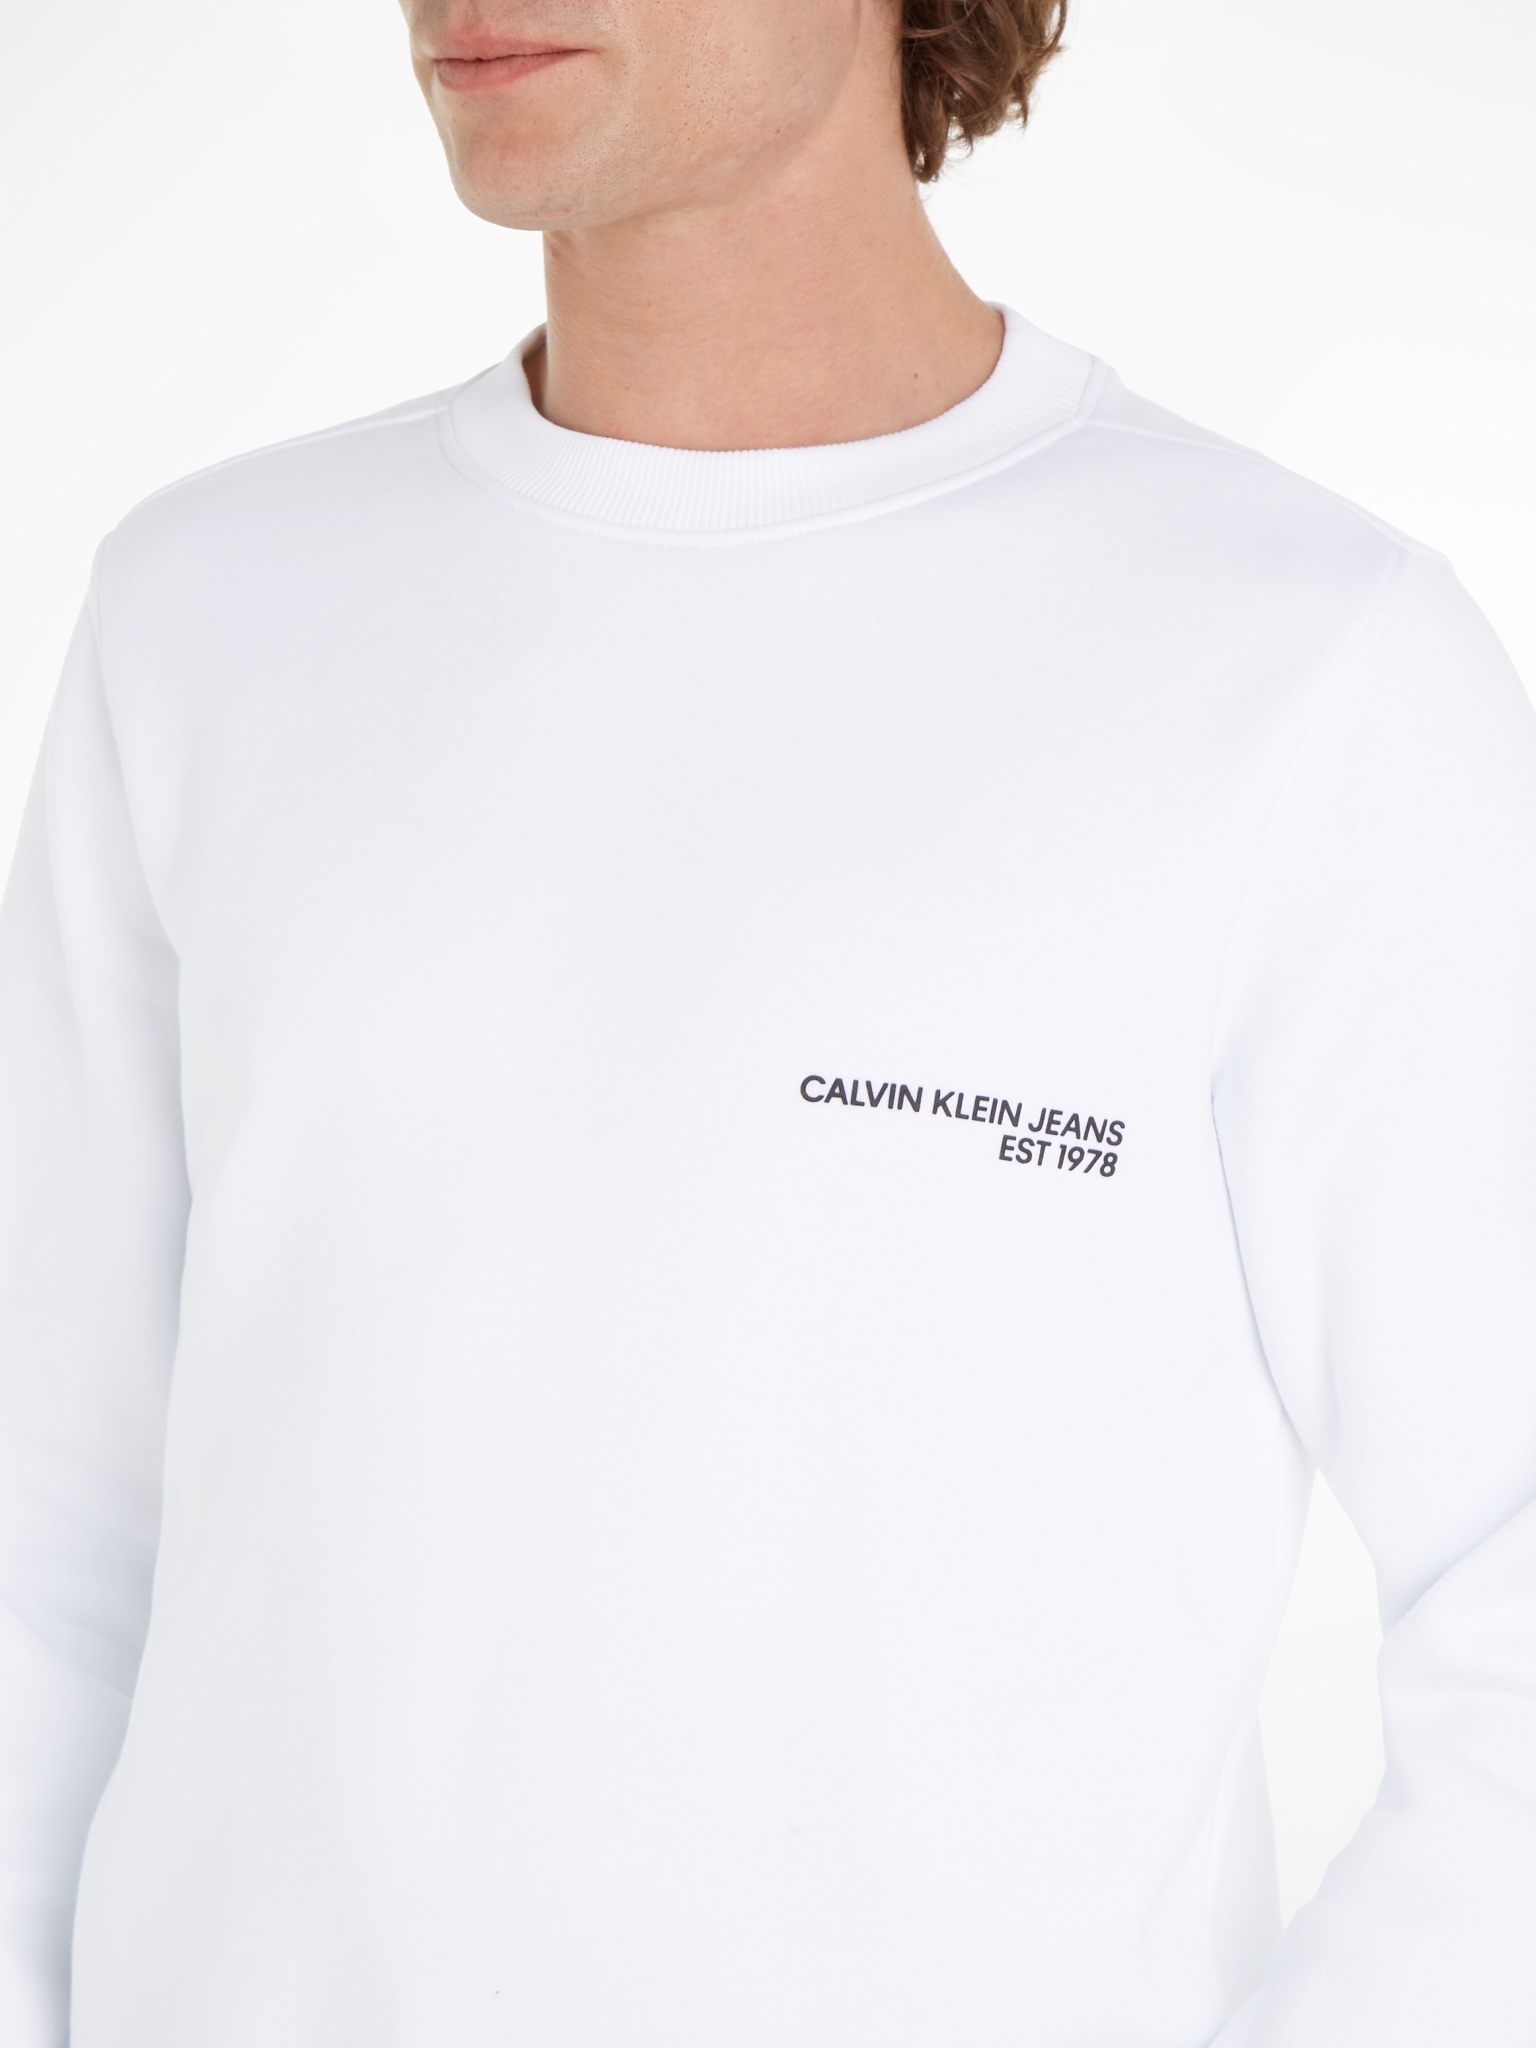 CALVIN KLEIN JEANS Logo-Sweatshirt mit Spray-Print 10728326 kaufen | WÖHRL